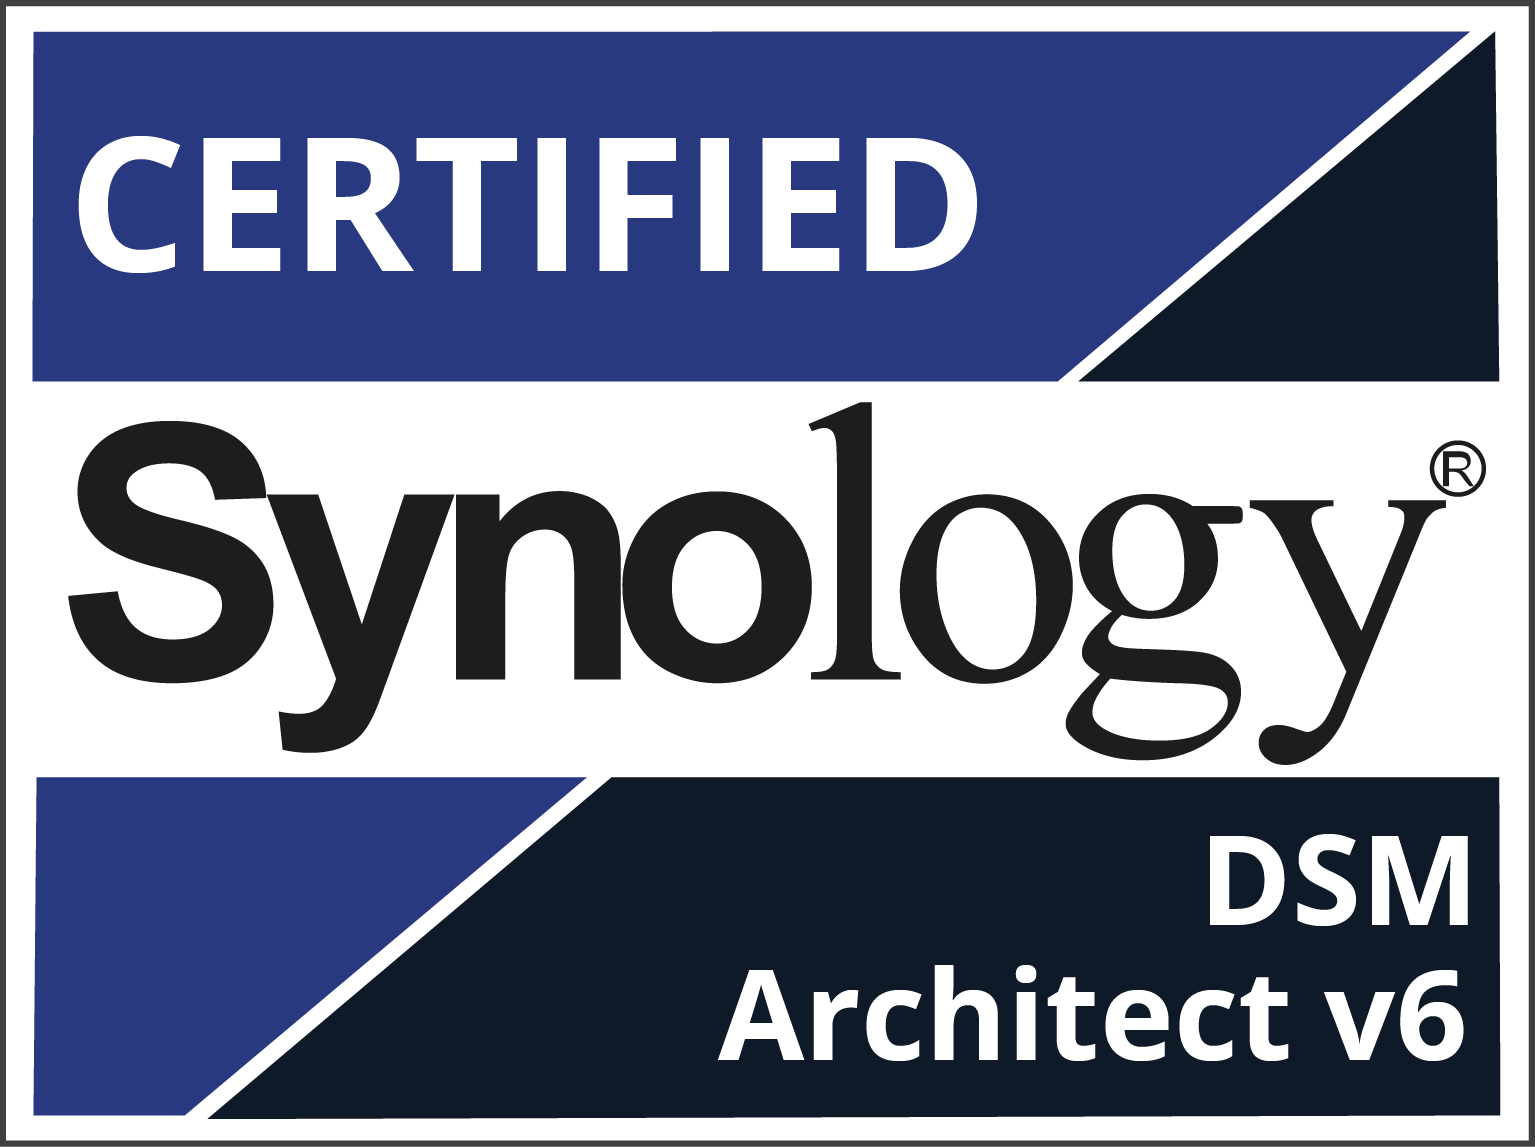 Vertriebs- und Servicepartner für Synology
DSM Architect 6.2
27.08.2020